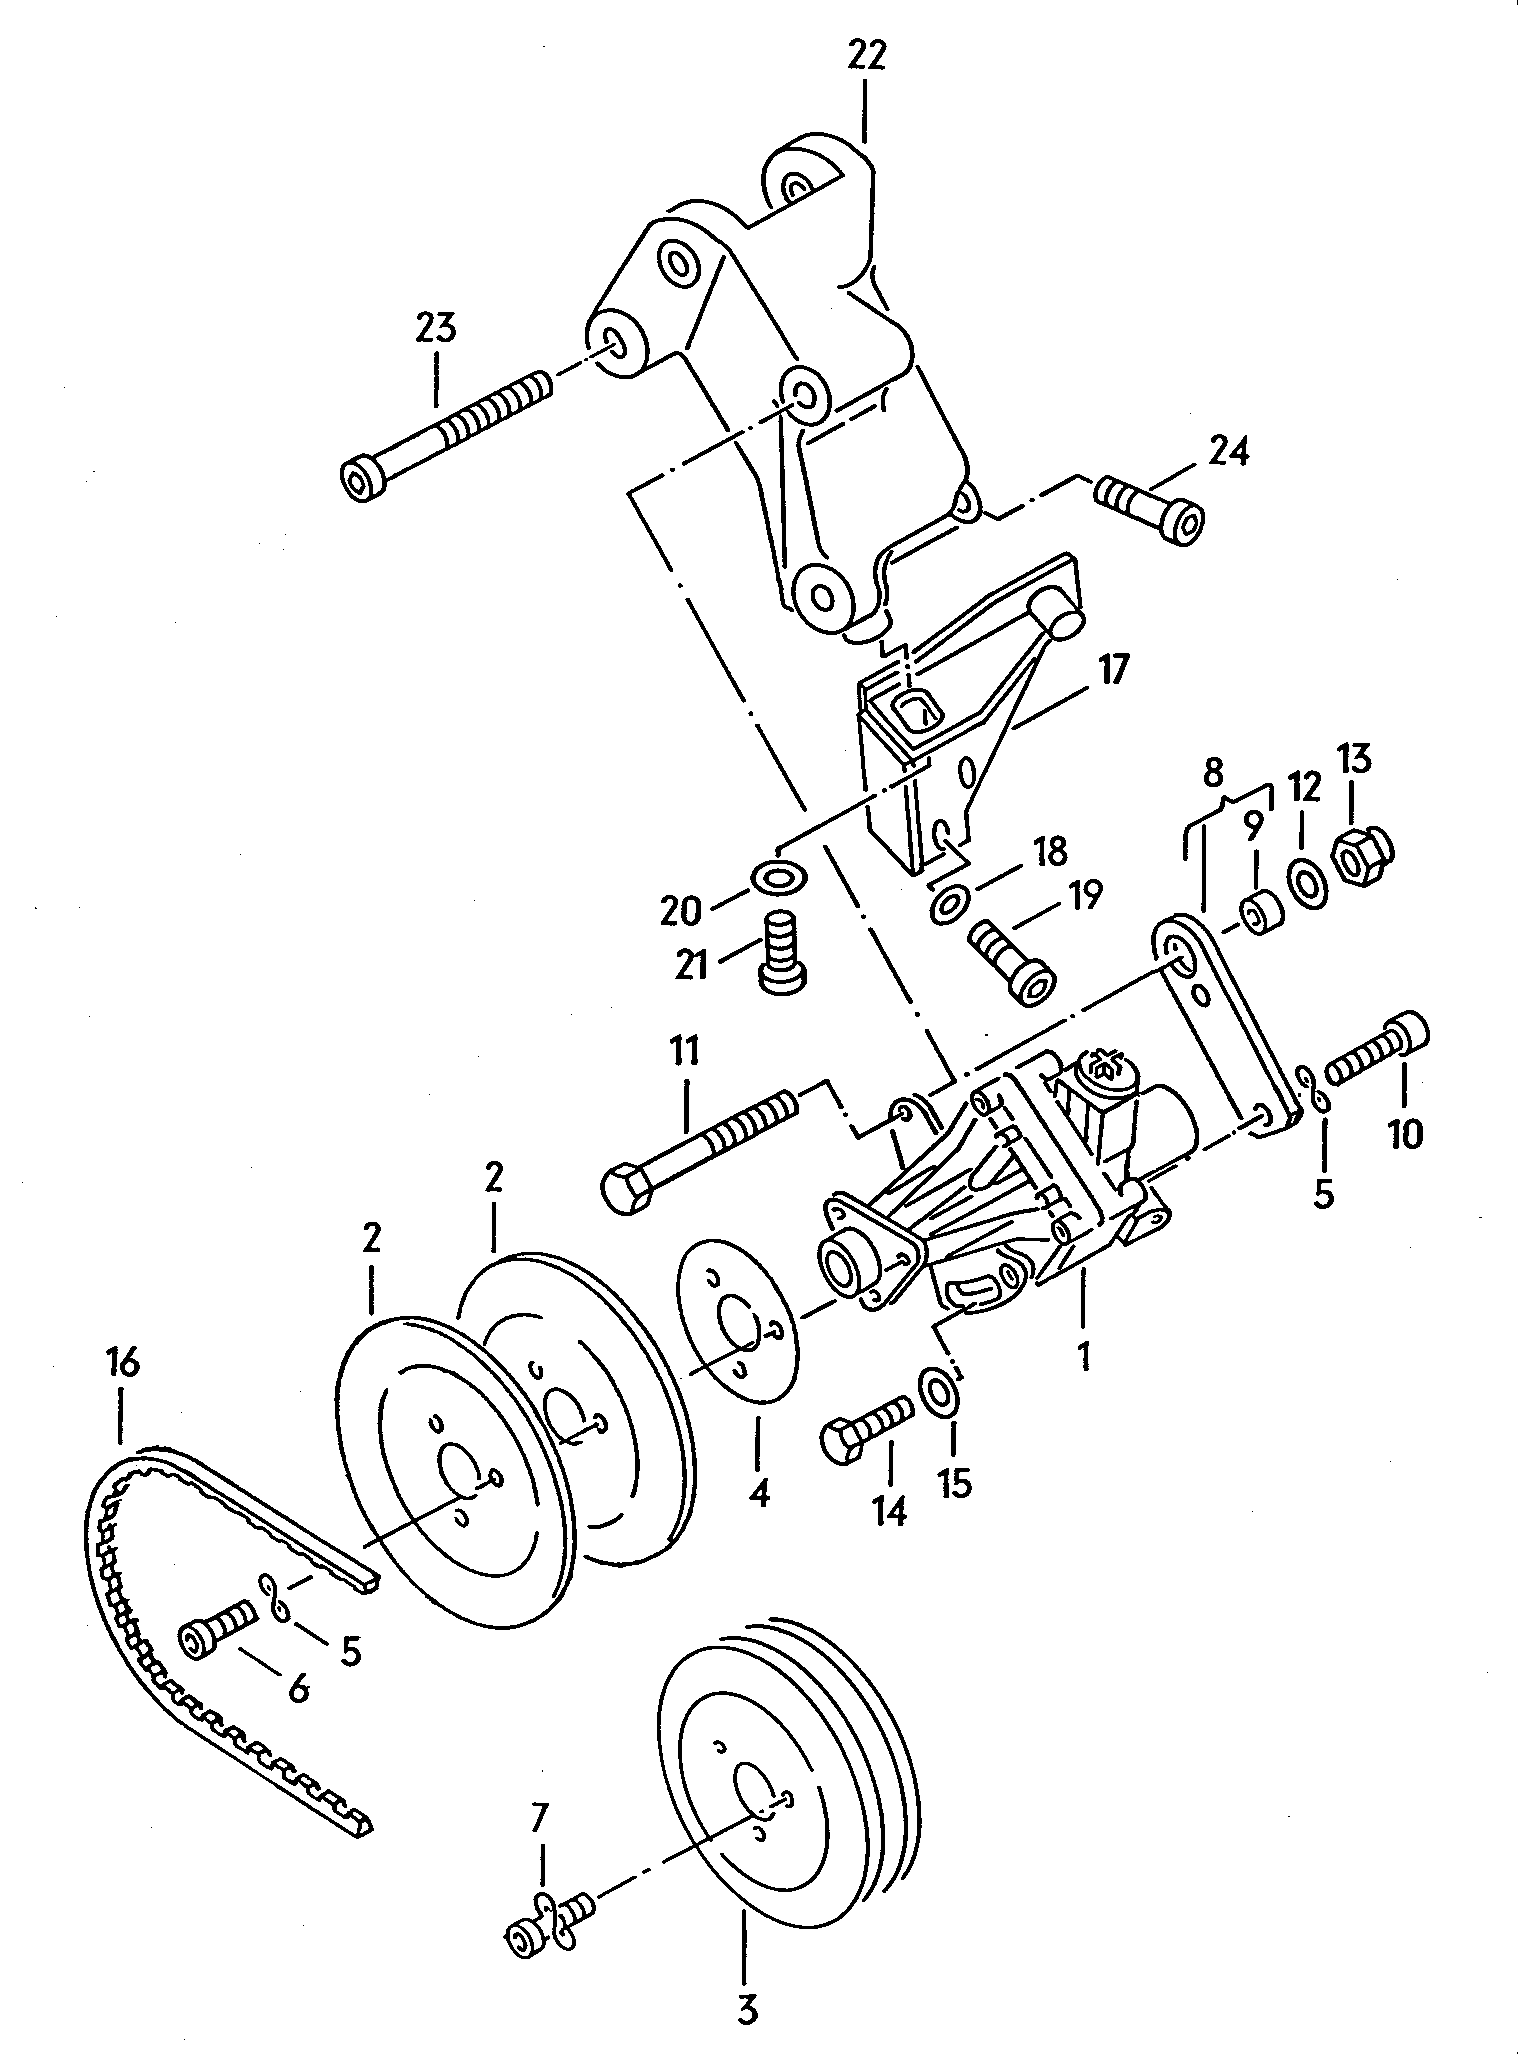 pompa idraulicaper servosterzo 1,6l - Typ 2/syncro - t2